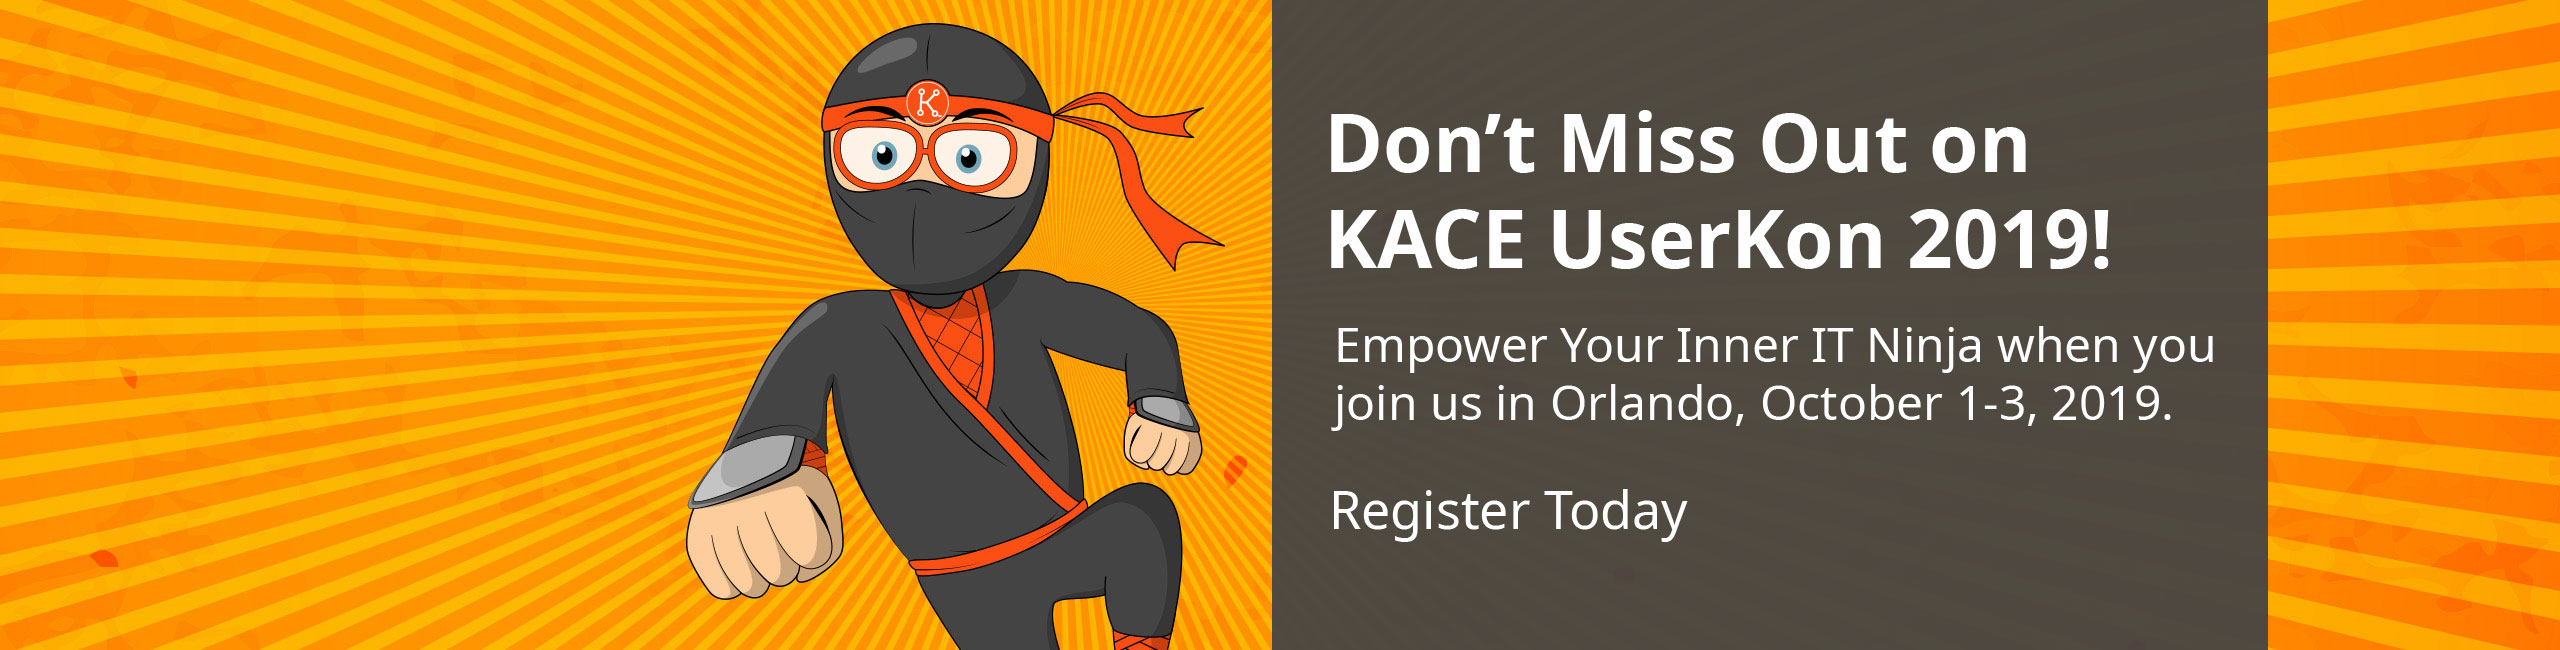 KACE UserKon 2019 Registration